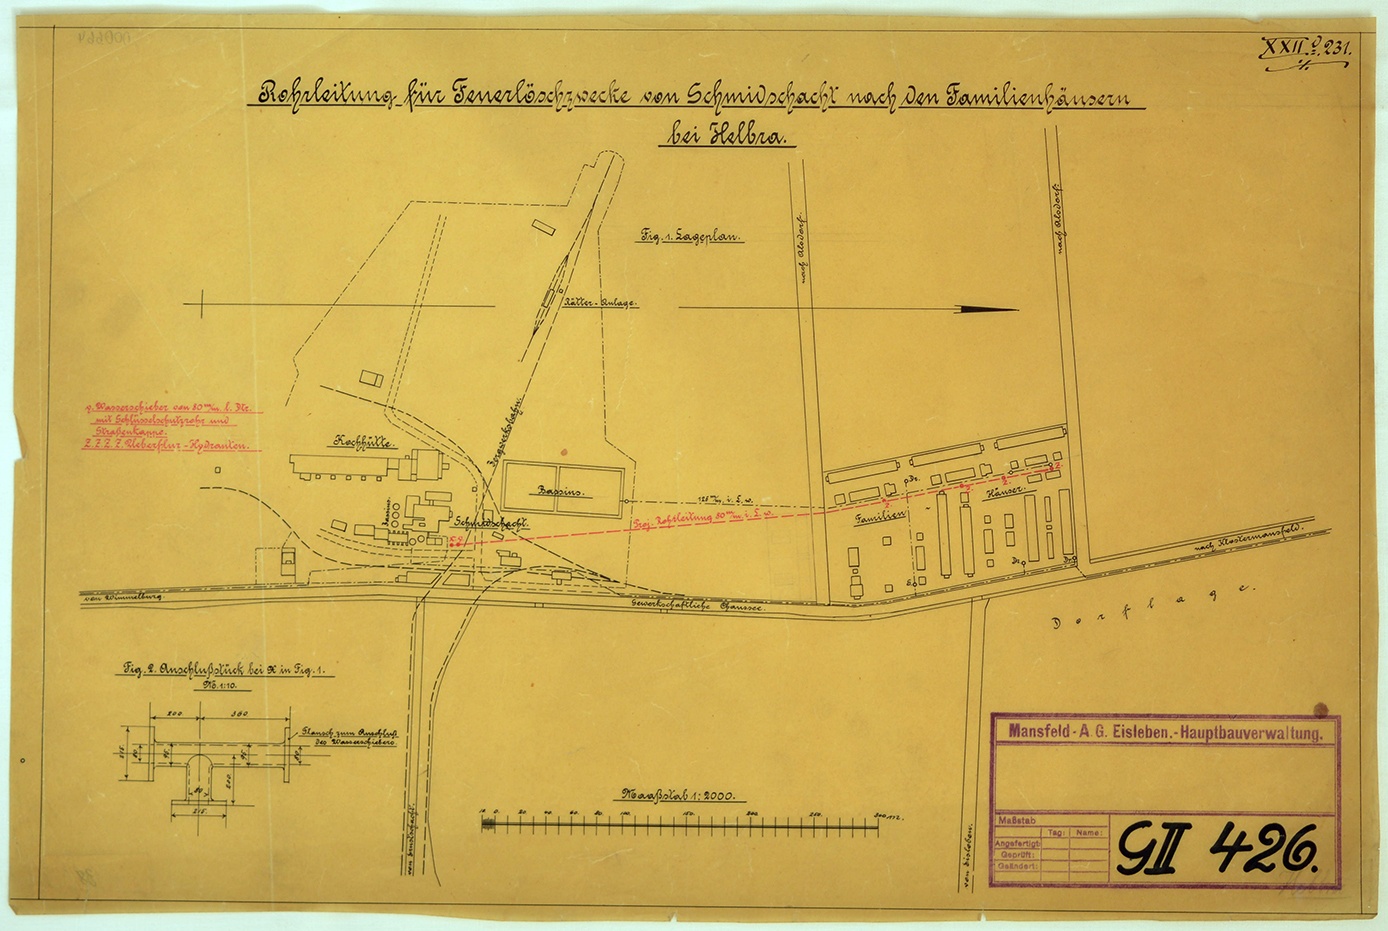 Rohrleitung für Feuerlöschzwecke von Schmidtschacht nach den Familienhäusern bei Helbra (Mansfeld-Museum im Humboldt-Schloss CC BY-NC-SA)